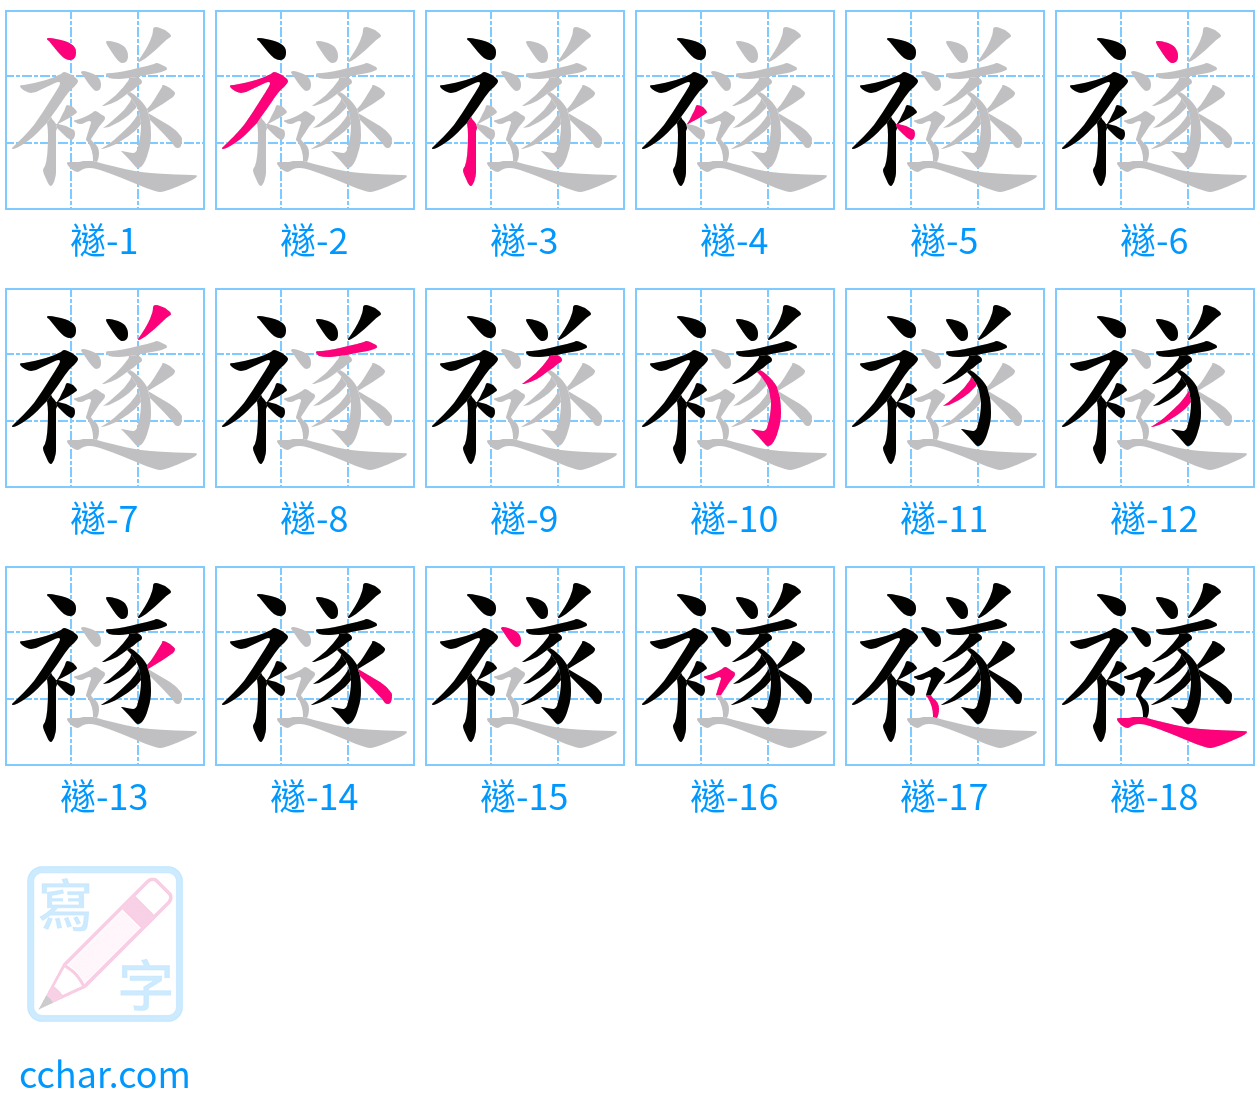 襚 stroke order step-by-step diagram